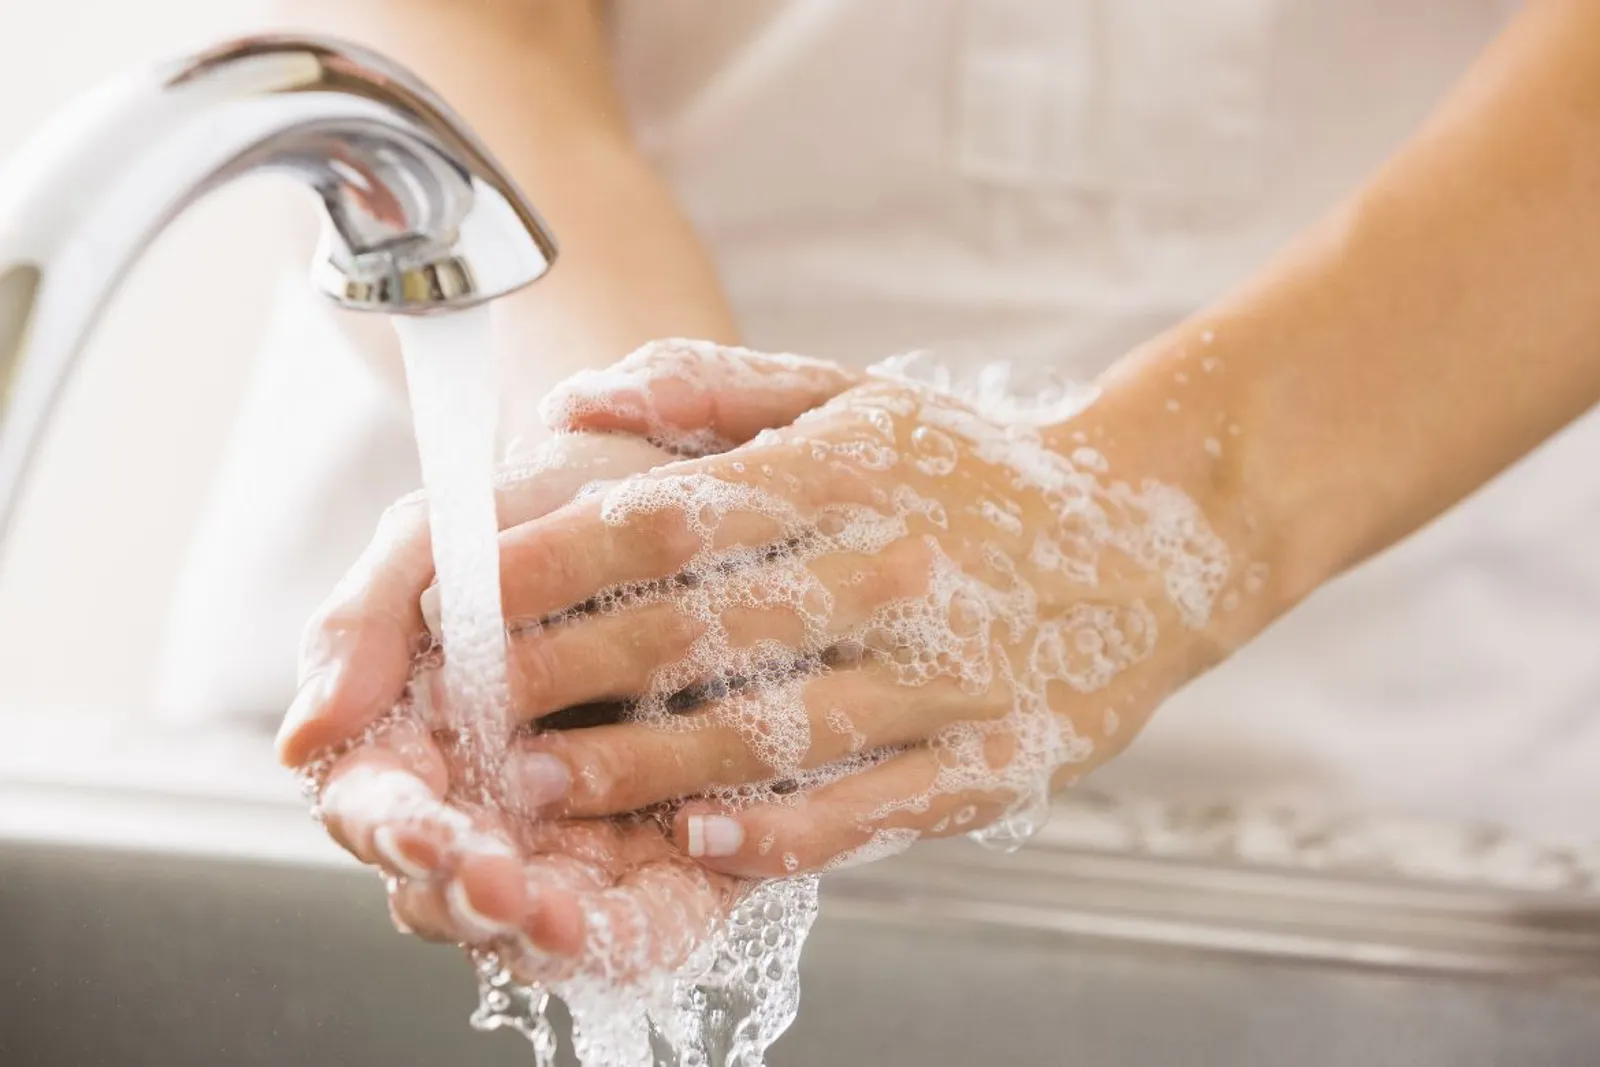 Biar Nggak Sakit, Segera Cuci Tangan Setelah Memegang 9 Hal Ini